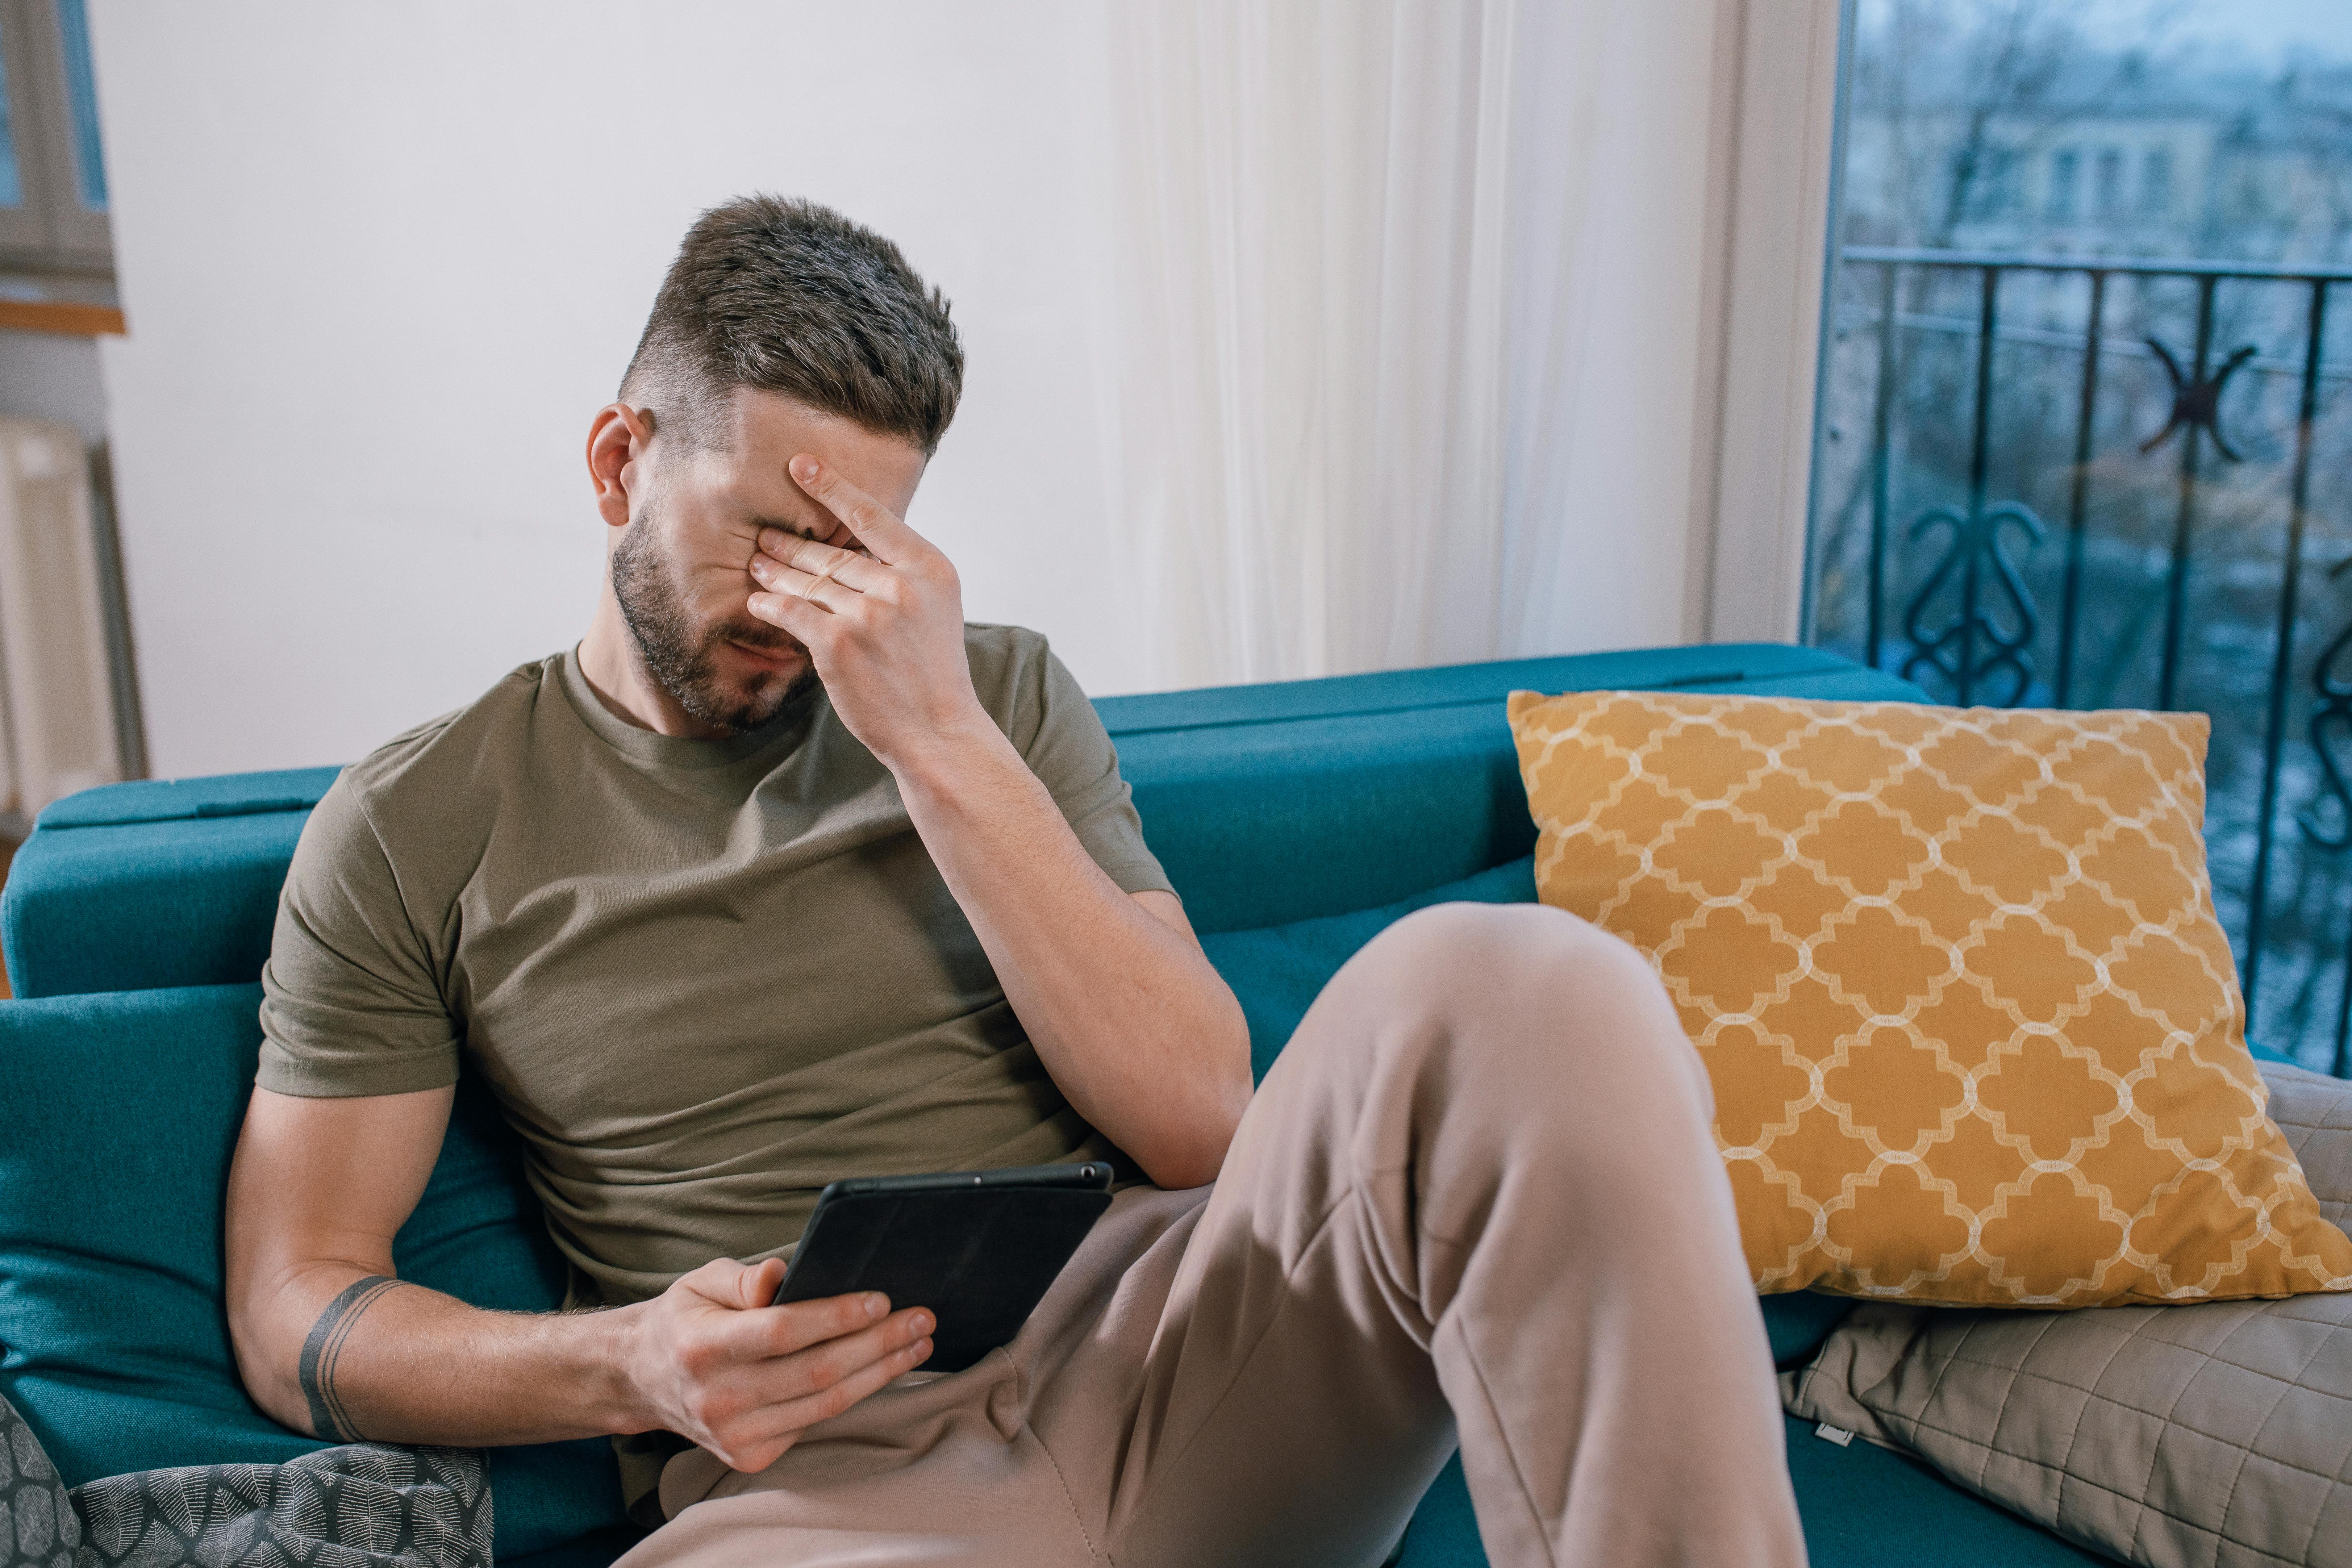 Ein Mann weint, während er an einem Tablet sitzt und etwas betrachtet | Quelle: Pexels